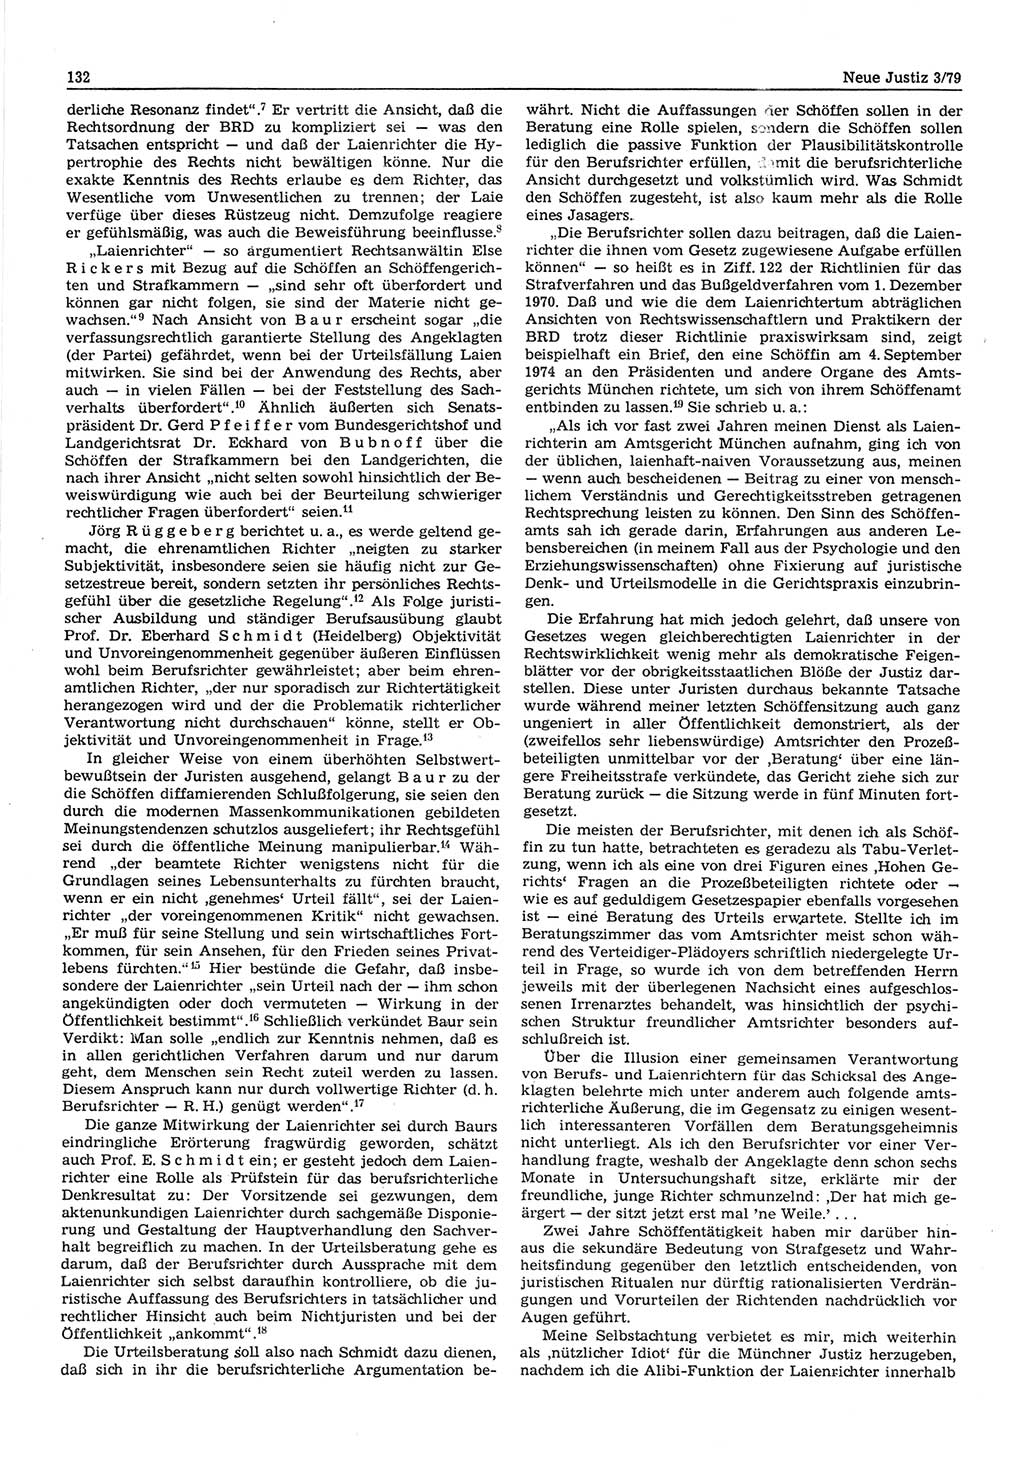 Neue Justiz (NJ), Zeitschrift für sozialistisches Recht und Gesetzlichkeit [Deutsche Demokratische Republik (DDR)], 33. Jahrgang 1979, Seite 132 (NJ DDR 1979, S. 132)